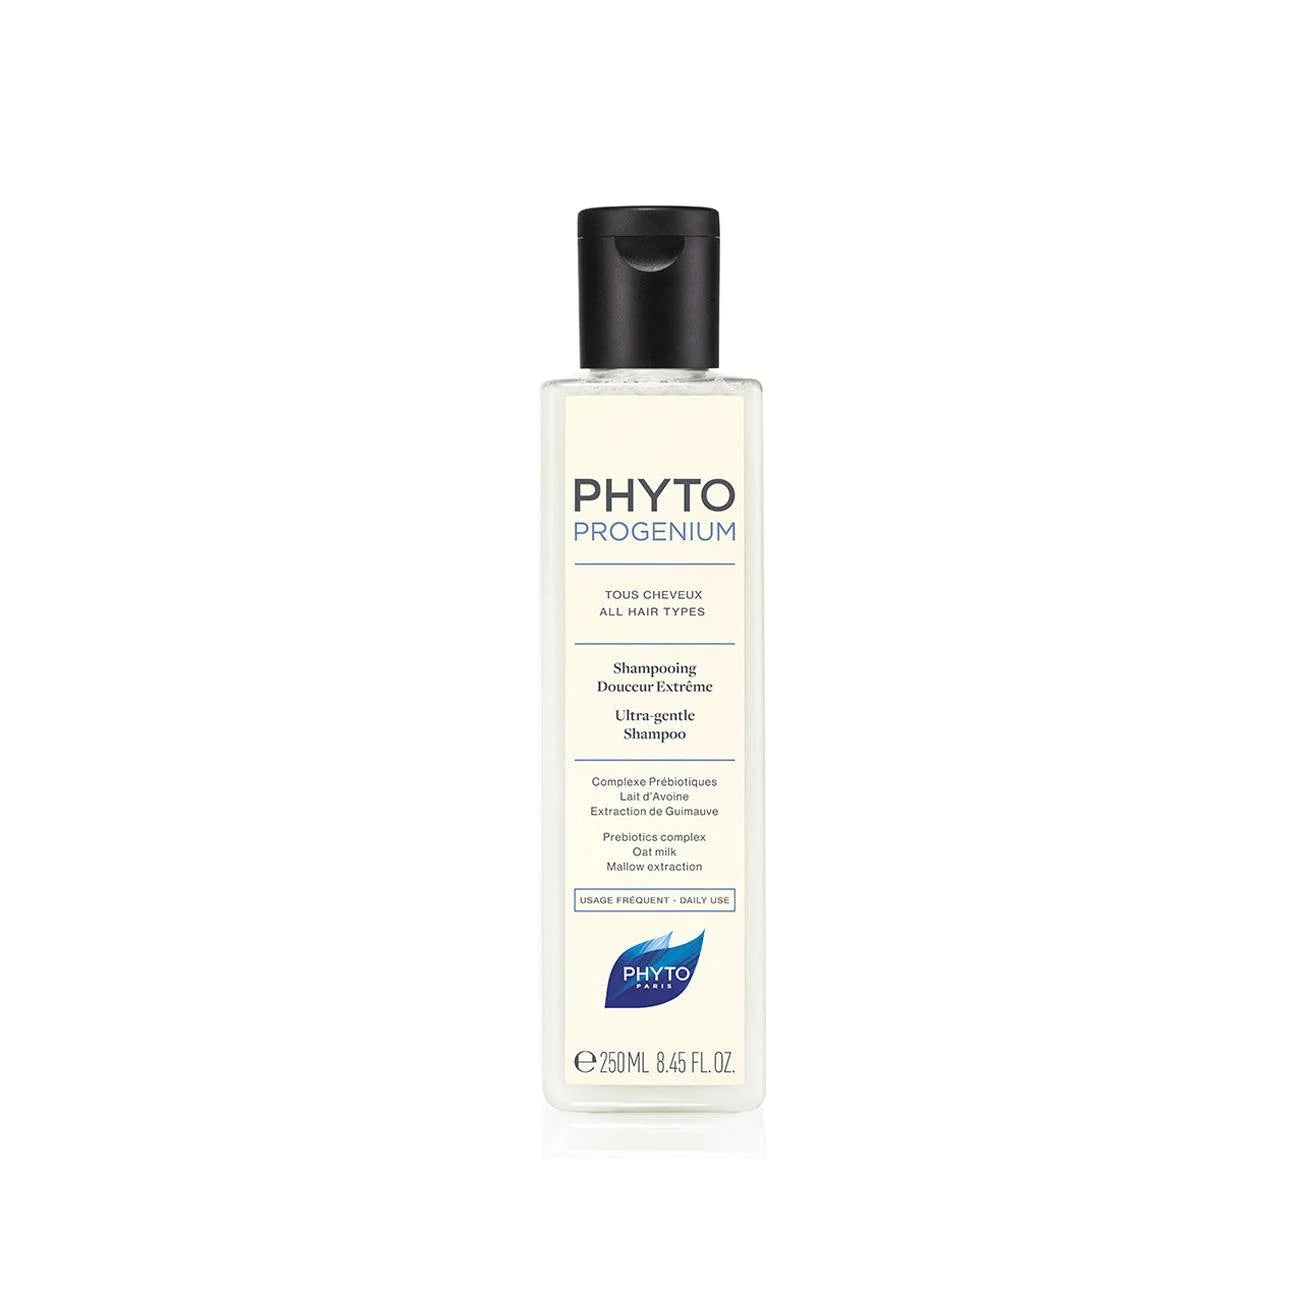 Phyto - Phytoprogenium Ultra Gentle Shampoo